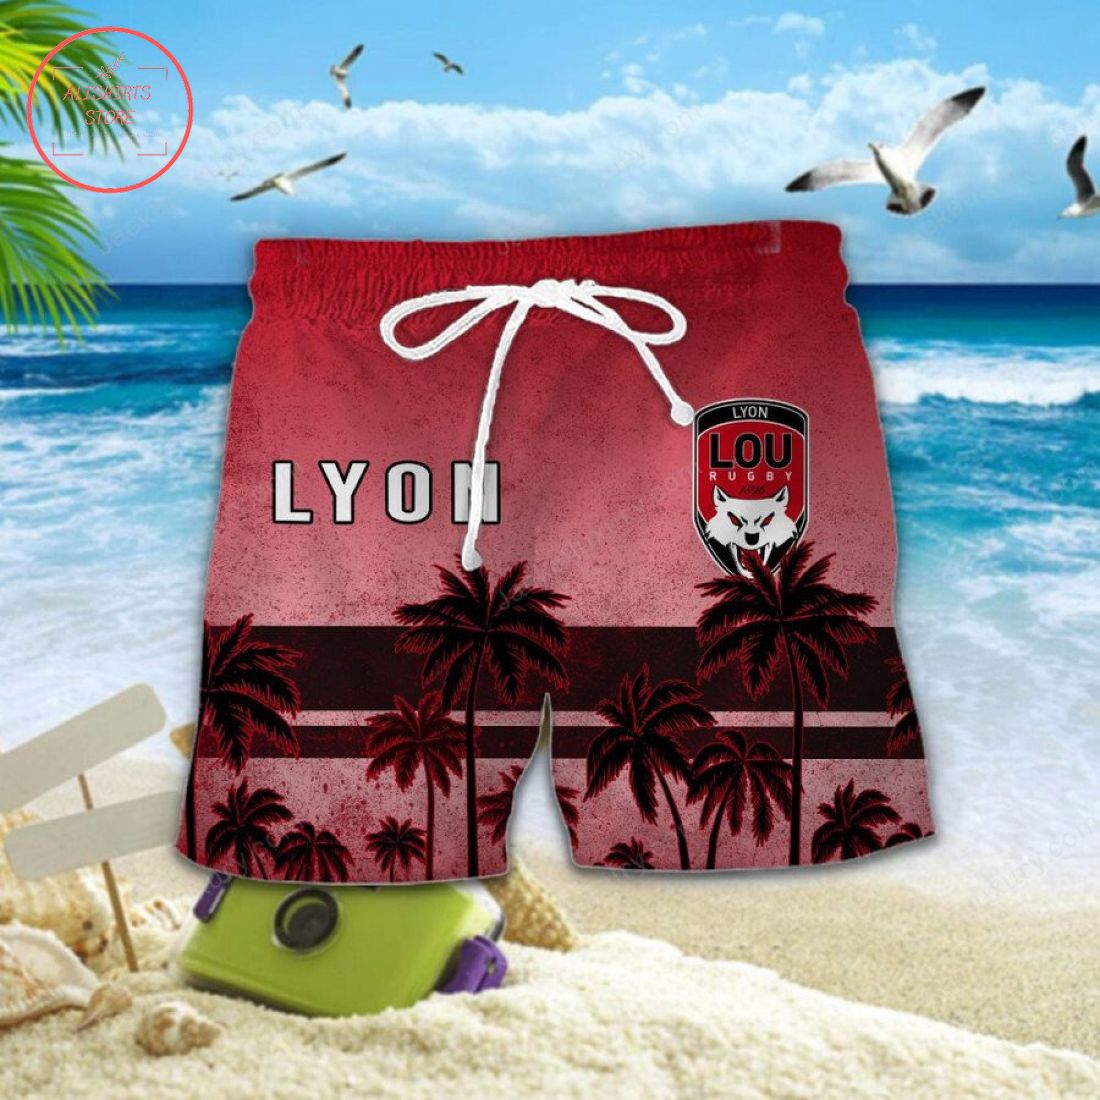 Lyon OU Hawaiian Shirt and Shorts